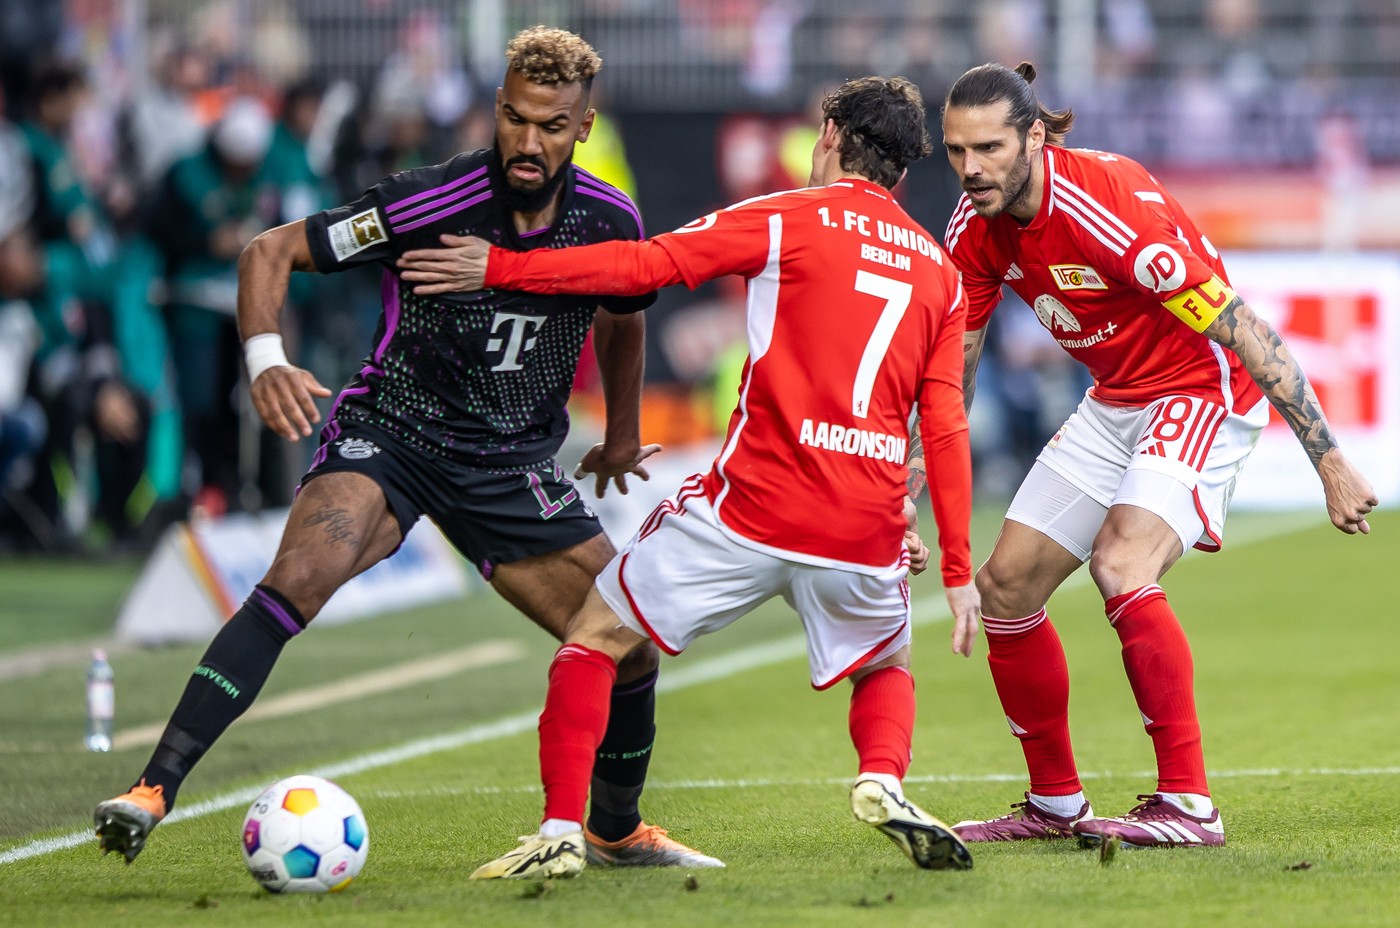 Union Berlin - Bayern Munchen 0-2, ACUM, Digi Sport 2. Kane marchează superb din lovitură liberă